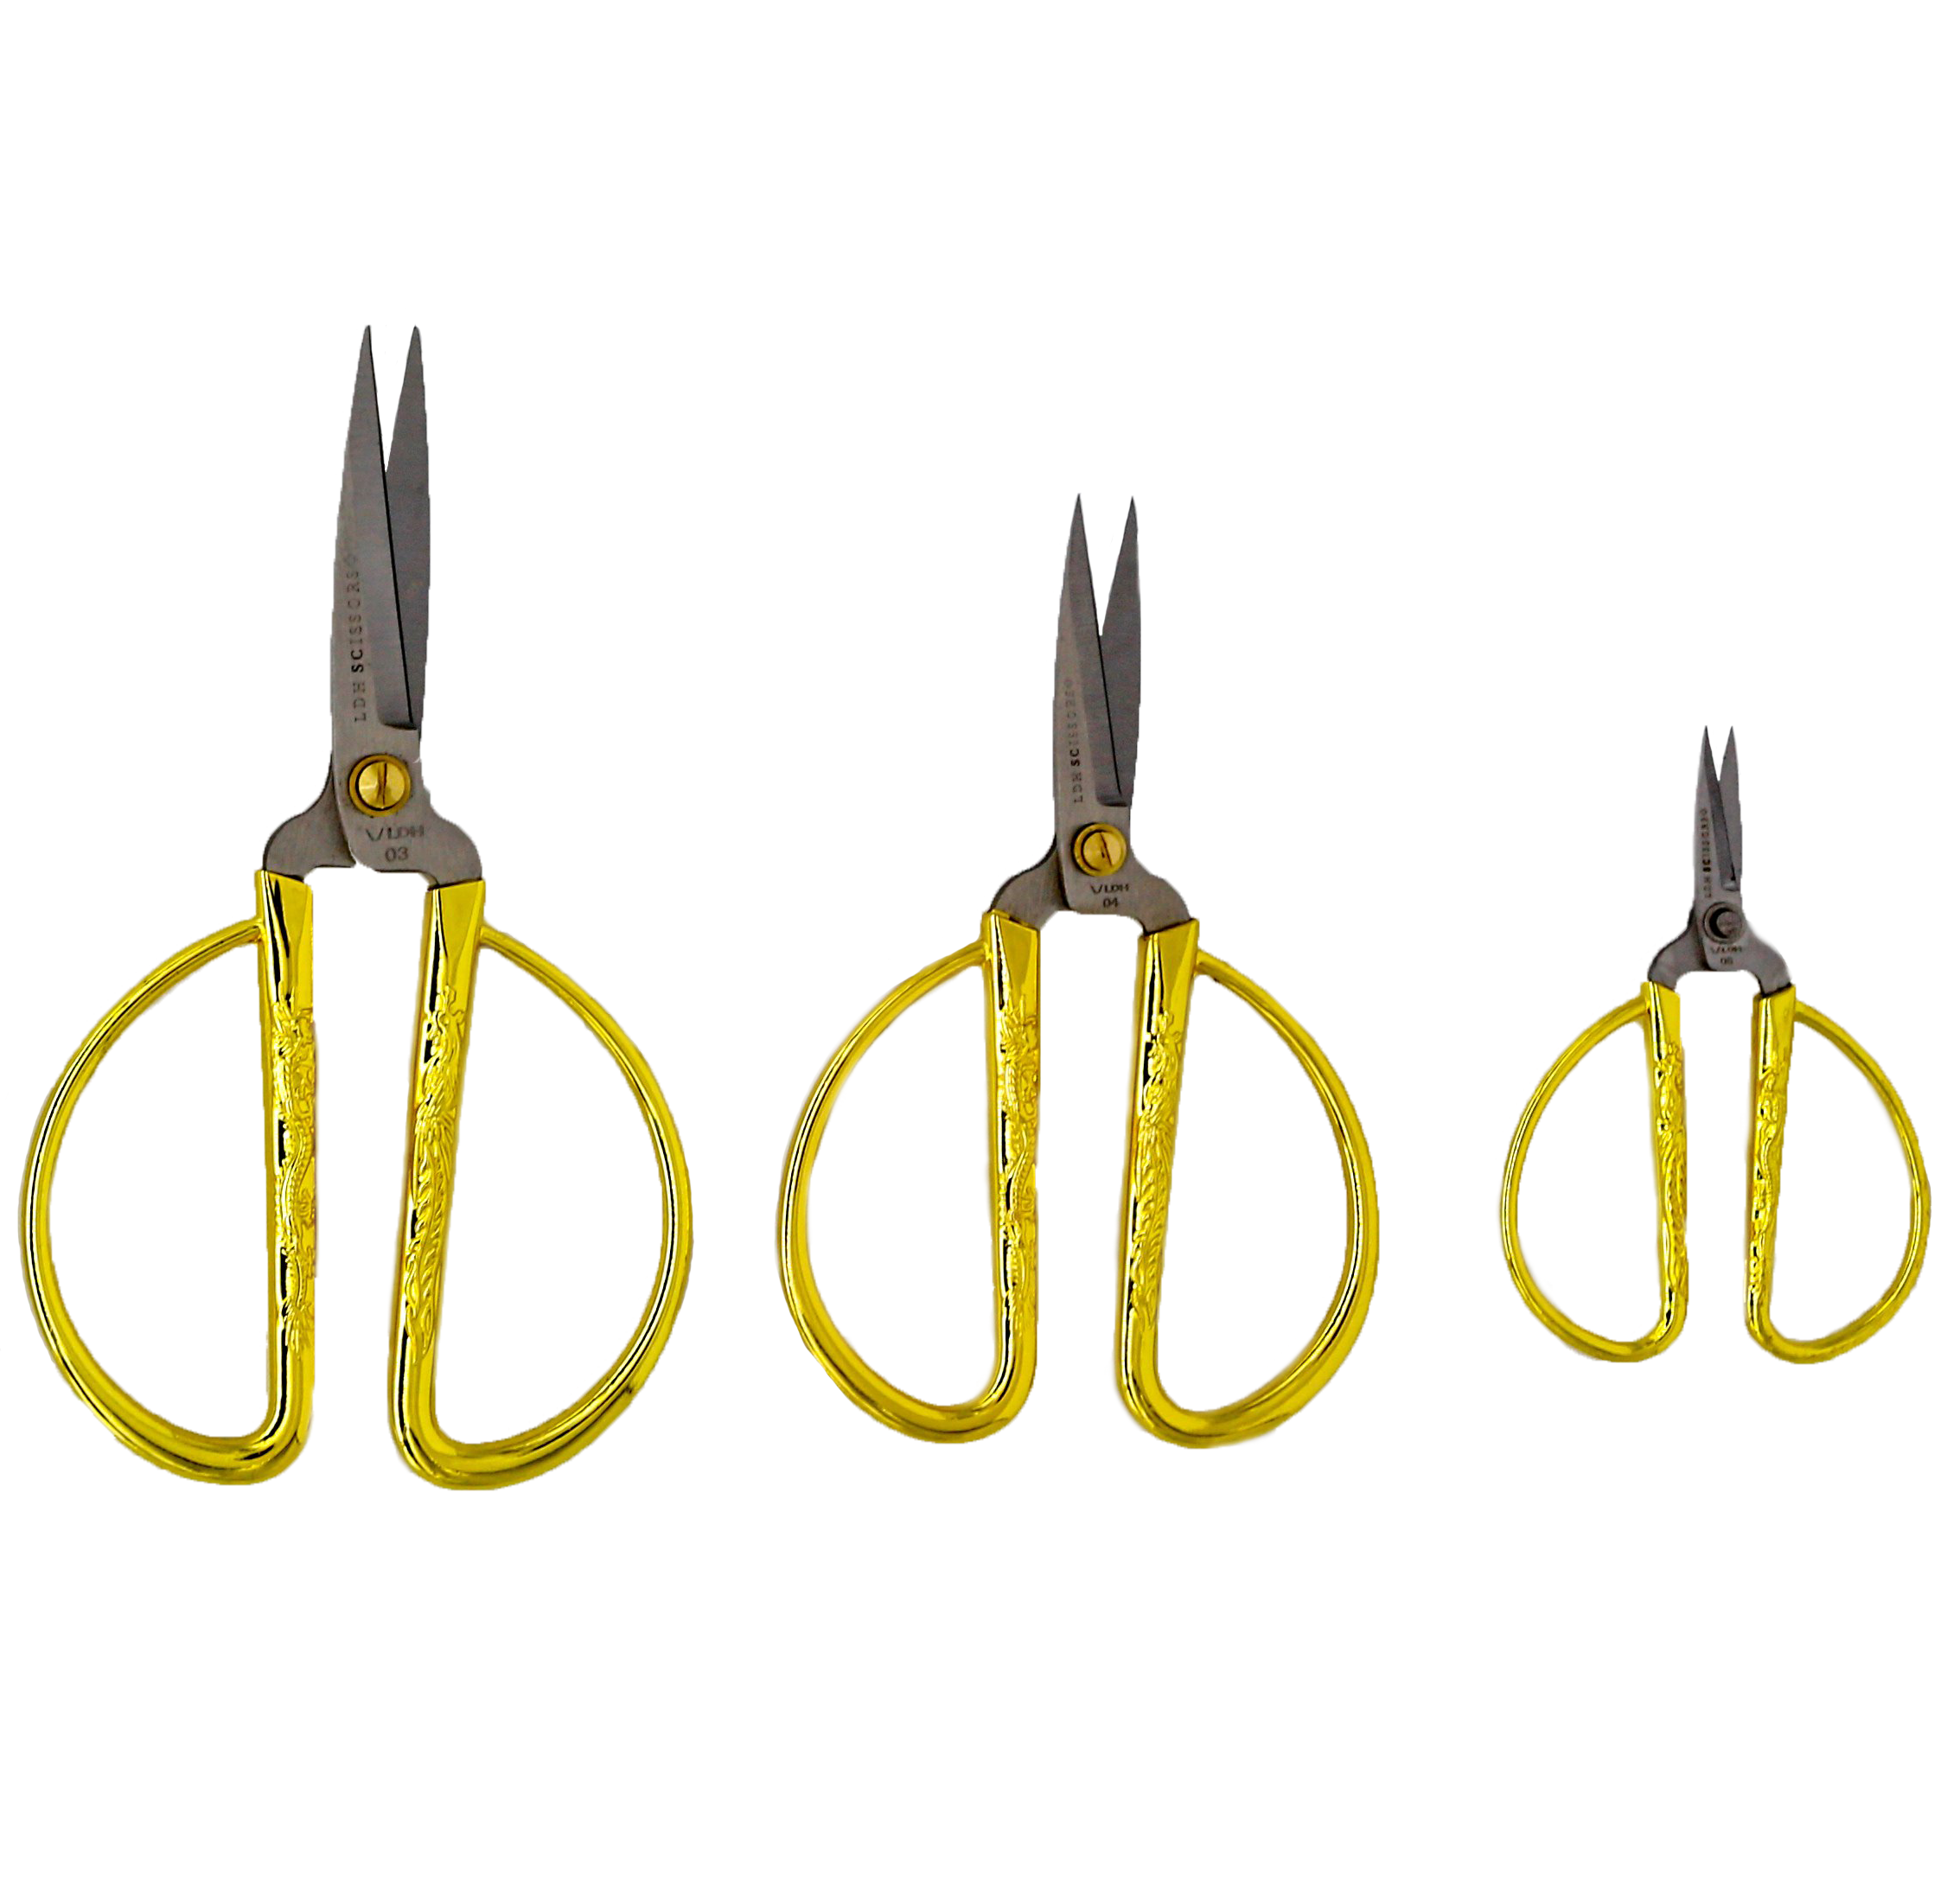 Gold craft scissors 